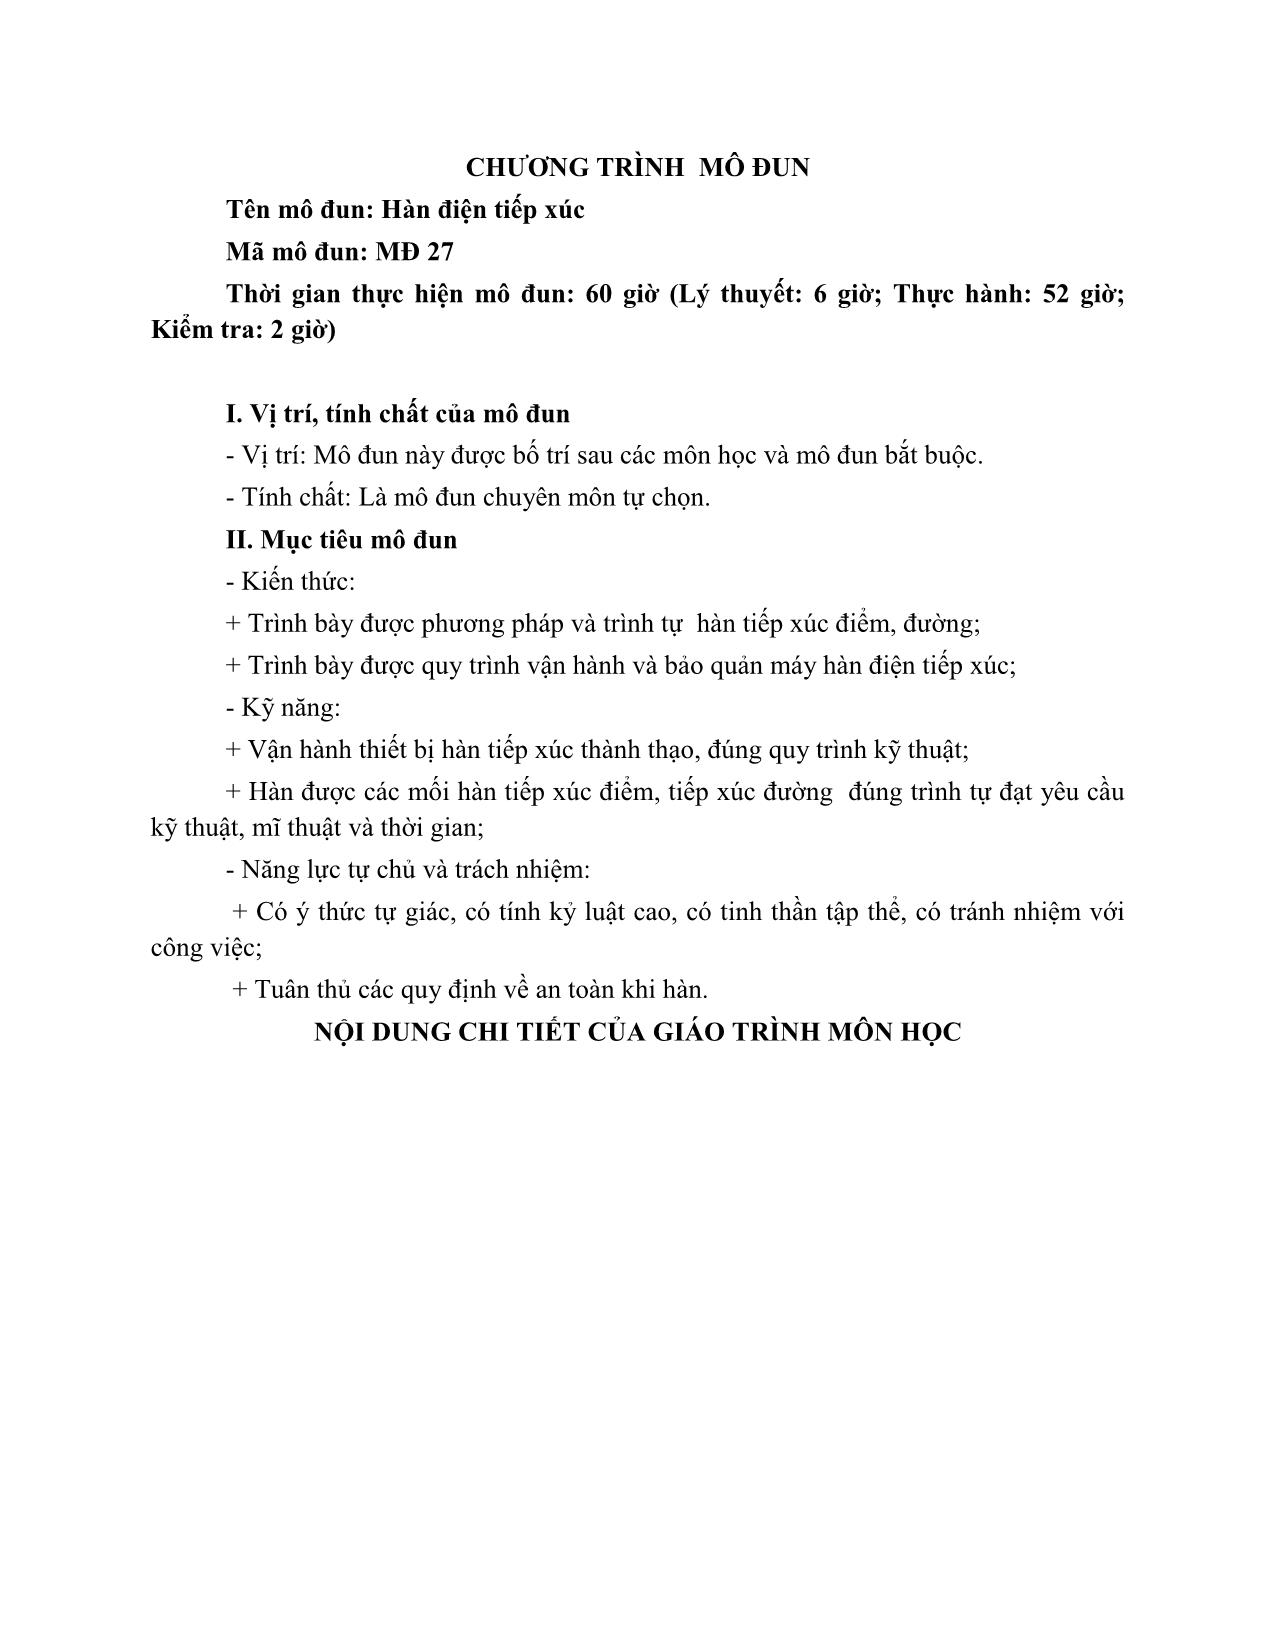 Giáo trình Hàn tiếp xúc trang 4